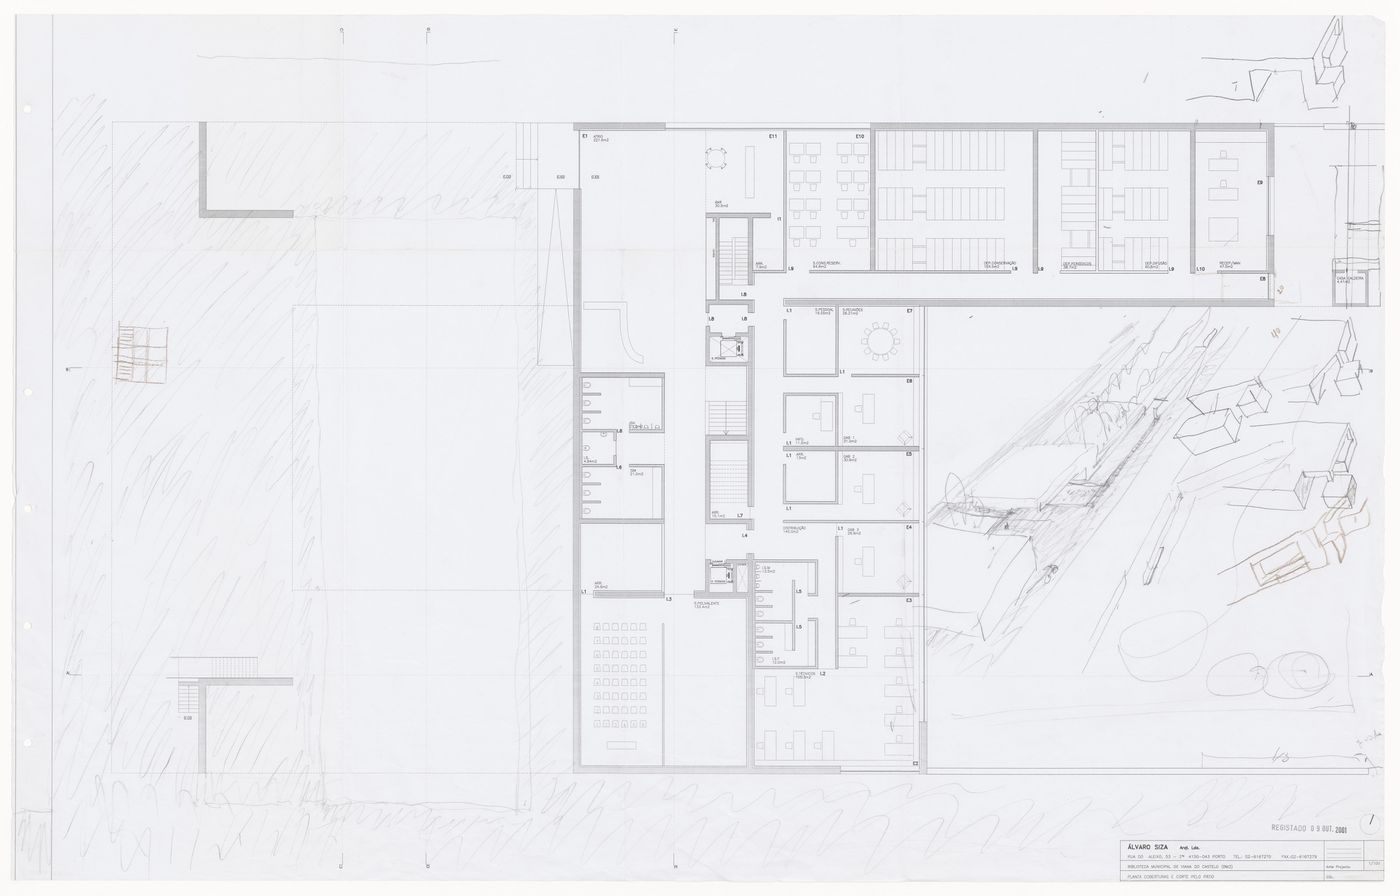 Plan and sketches for Biblioteca da Câmara Municipal de Viana do Castelo, Viana do Castelo, Portugal